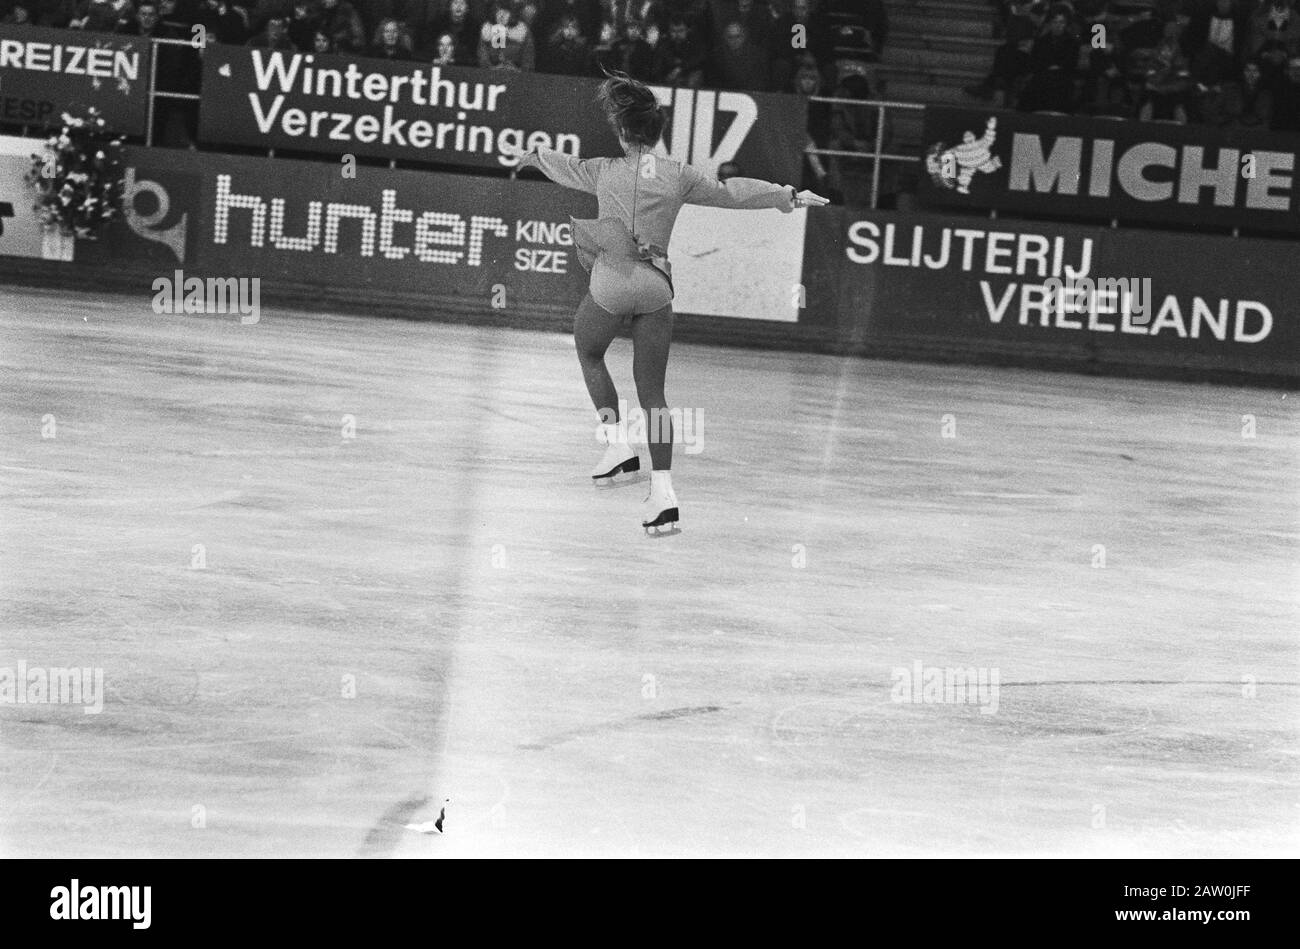 Niederländische Meisterschaften Eiskunstlauf; Rudina Pasveer im Einsatz Datum: 15. Januar 1977 Schlagwörter: Eiskunstlauf, Eiskunstlauf Personenname: Pasveer, Rudwina Stockfoto